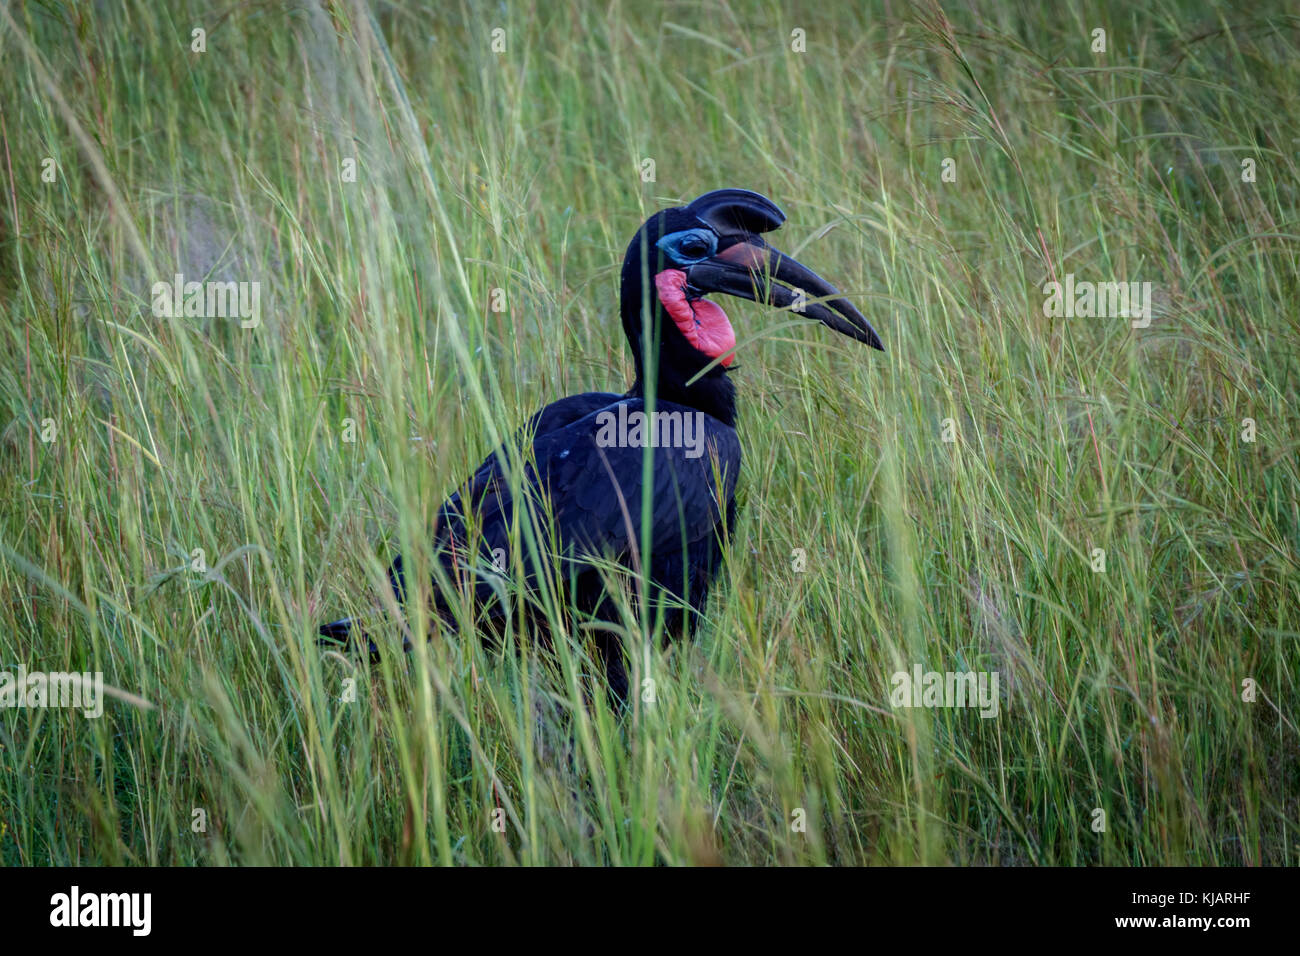 Eine hornbill Vogel entspannen in hohem Gras in Murchison Falls National Park in Uganda. Schade, dass dieser Ort gefährdet ist durch Öl bohren Unternehmen Stockfoto